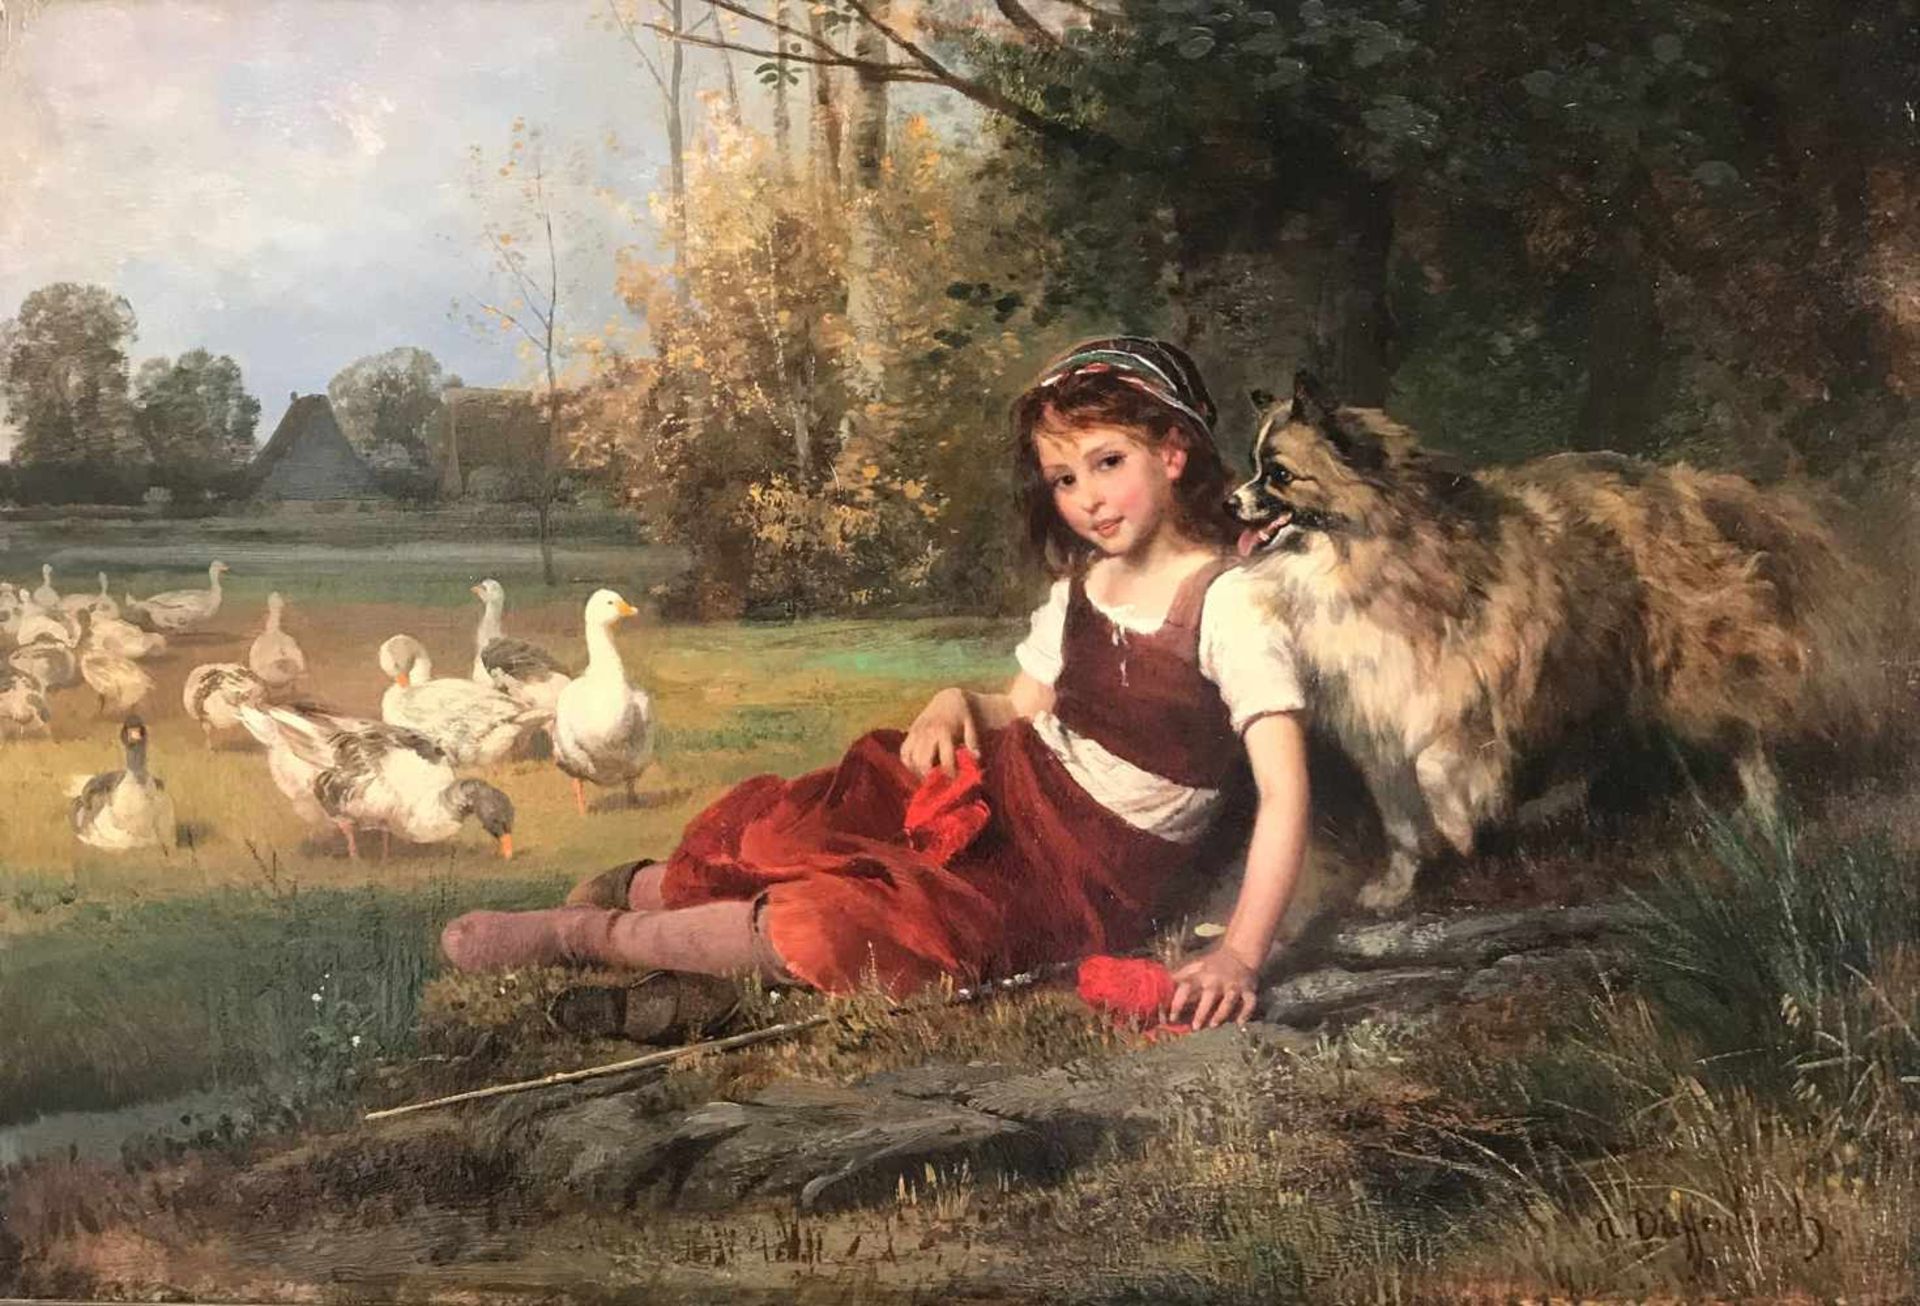 Anton Heinrich Dieffenbach (1831-1914), Gänsemagd oder Gänseliesel mit Hund und Gänsen in einer